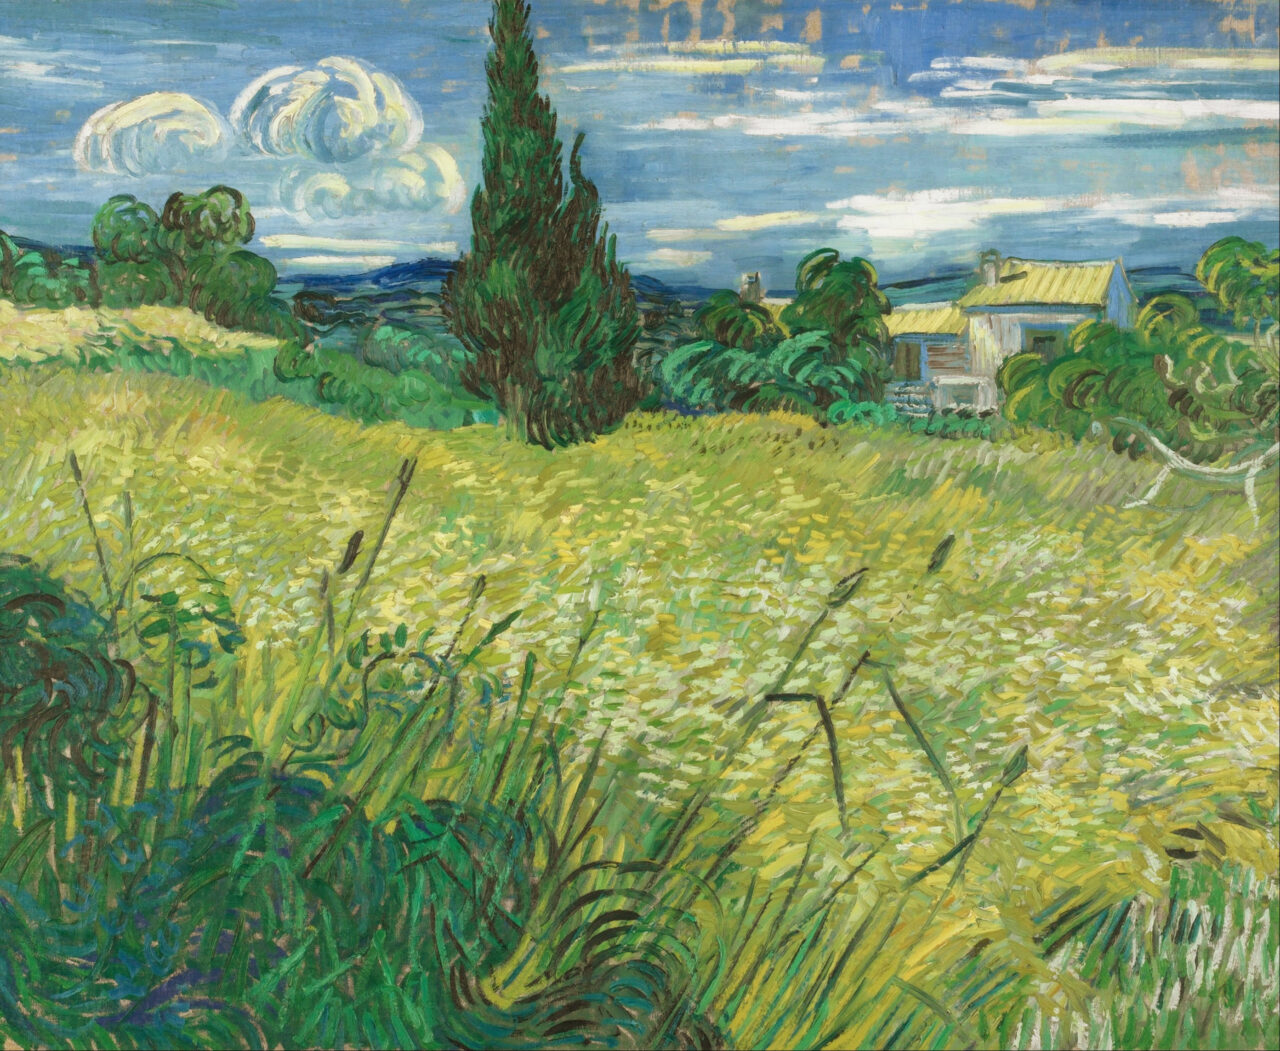 Farben in der Fotografie: Farbe Grün, Grünes Weizenfeld mit Zypresse. Vincent Van Gogh (1889)
